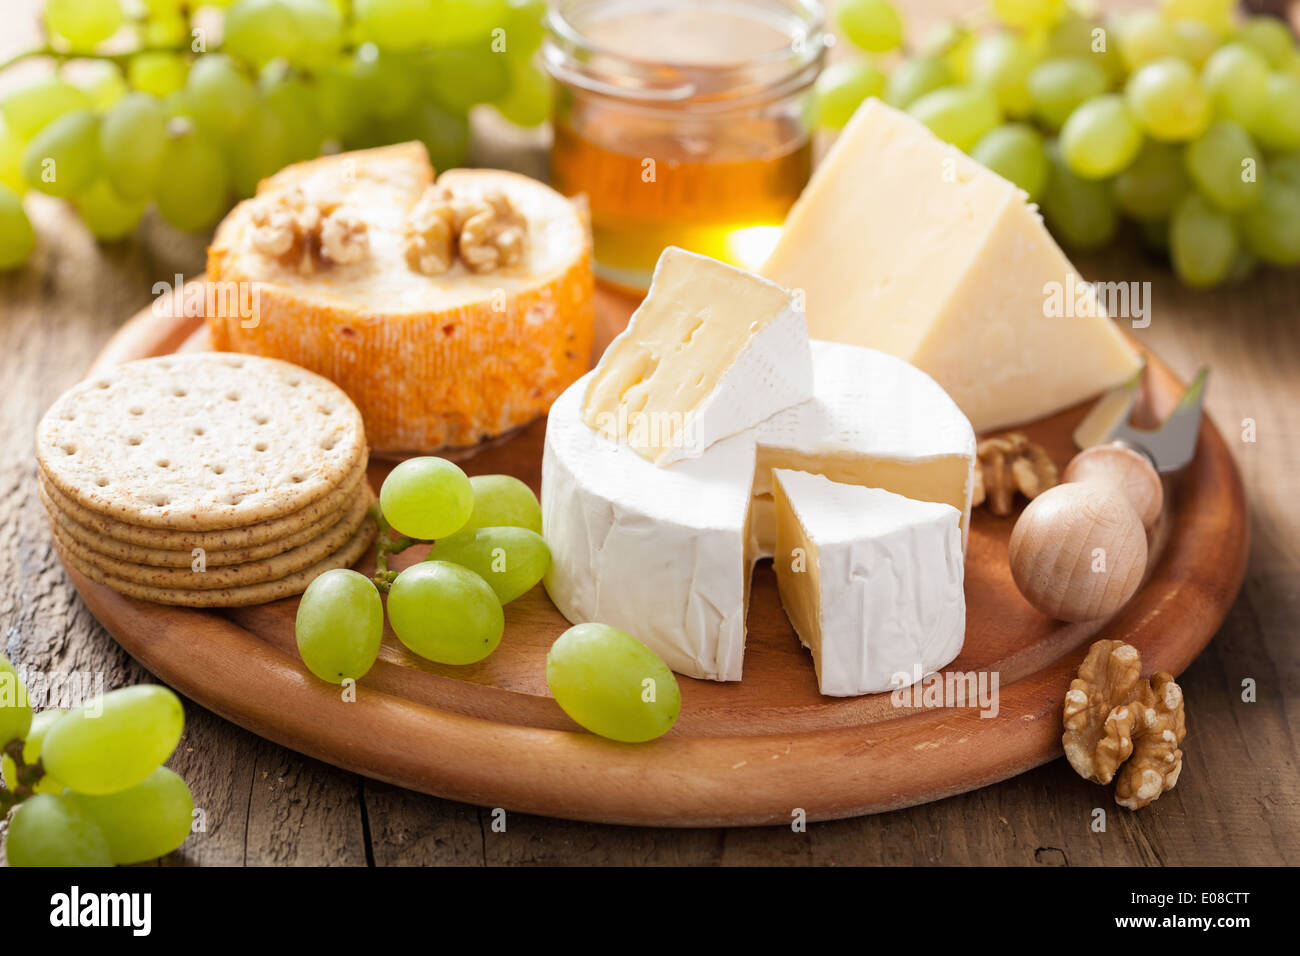 Assiette de fromage avec camembert, cheddar, les raisins et le miel Banque D'Images